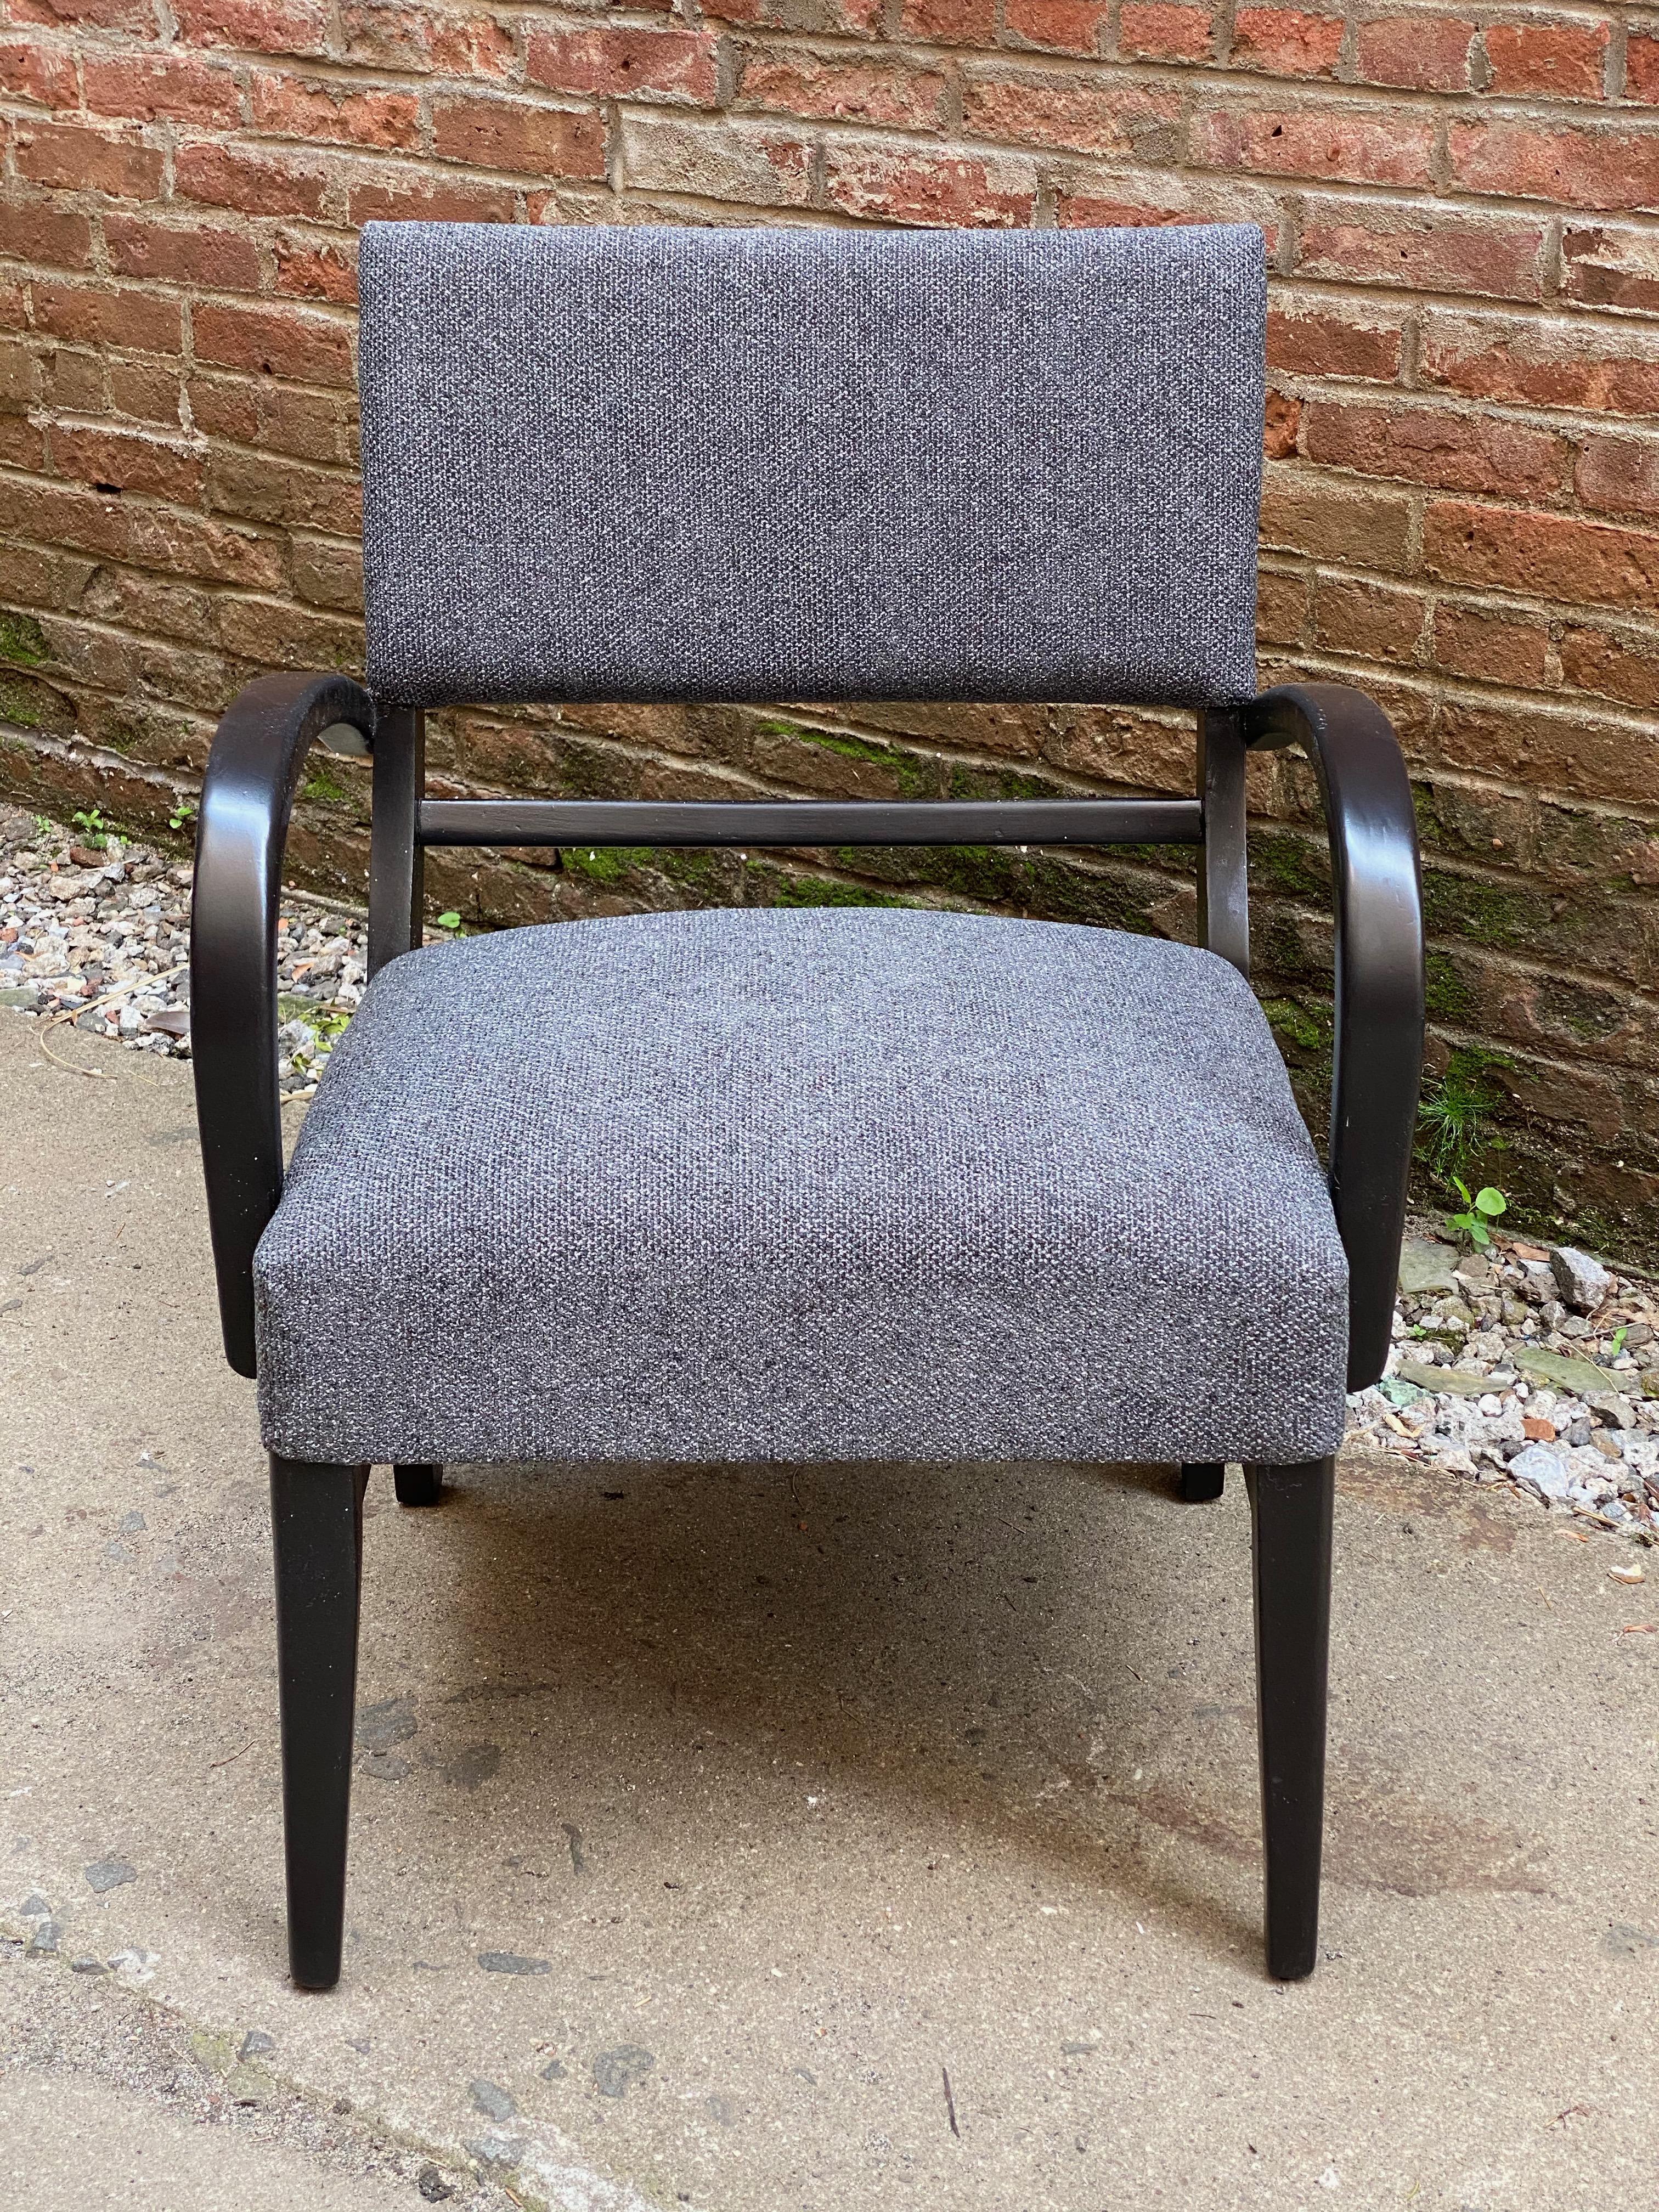 Sessel mit Bogenarm aus den späten 1940er Jahren. Neu gepolstert mit einem schön strukturierten grauen Stoff. Individuell schwarz lackierter Holzrahmen. Tolle Linien und ein tolles Profil. Sockel mit Bahre und konisch zulaufenden Vorderbeinen.